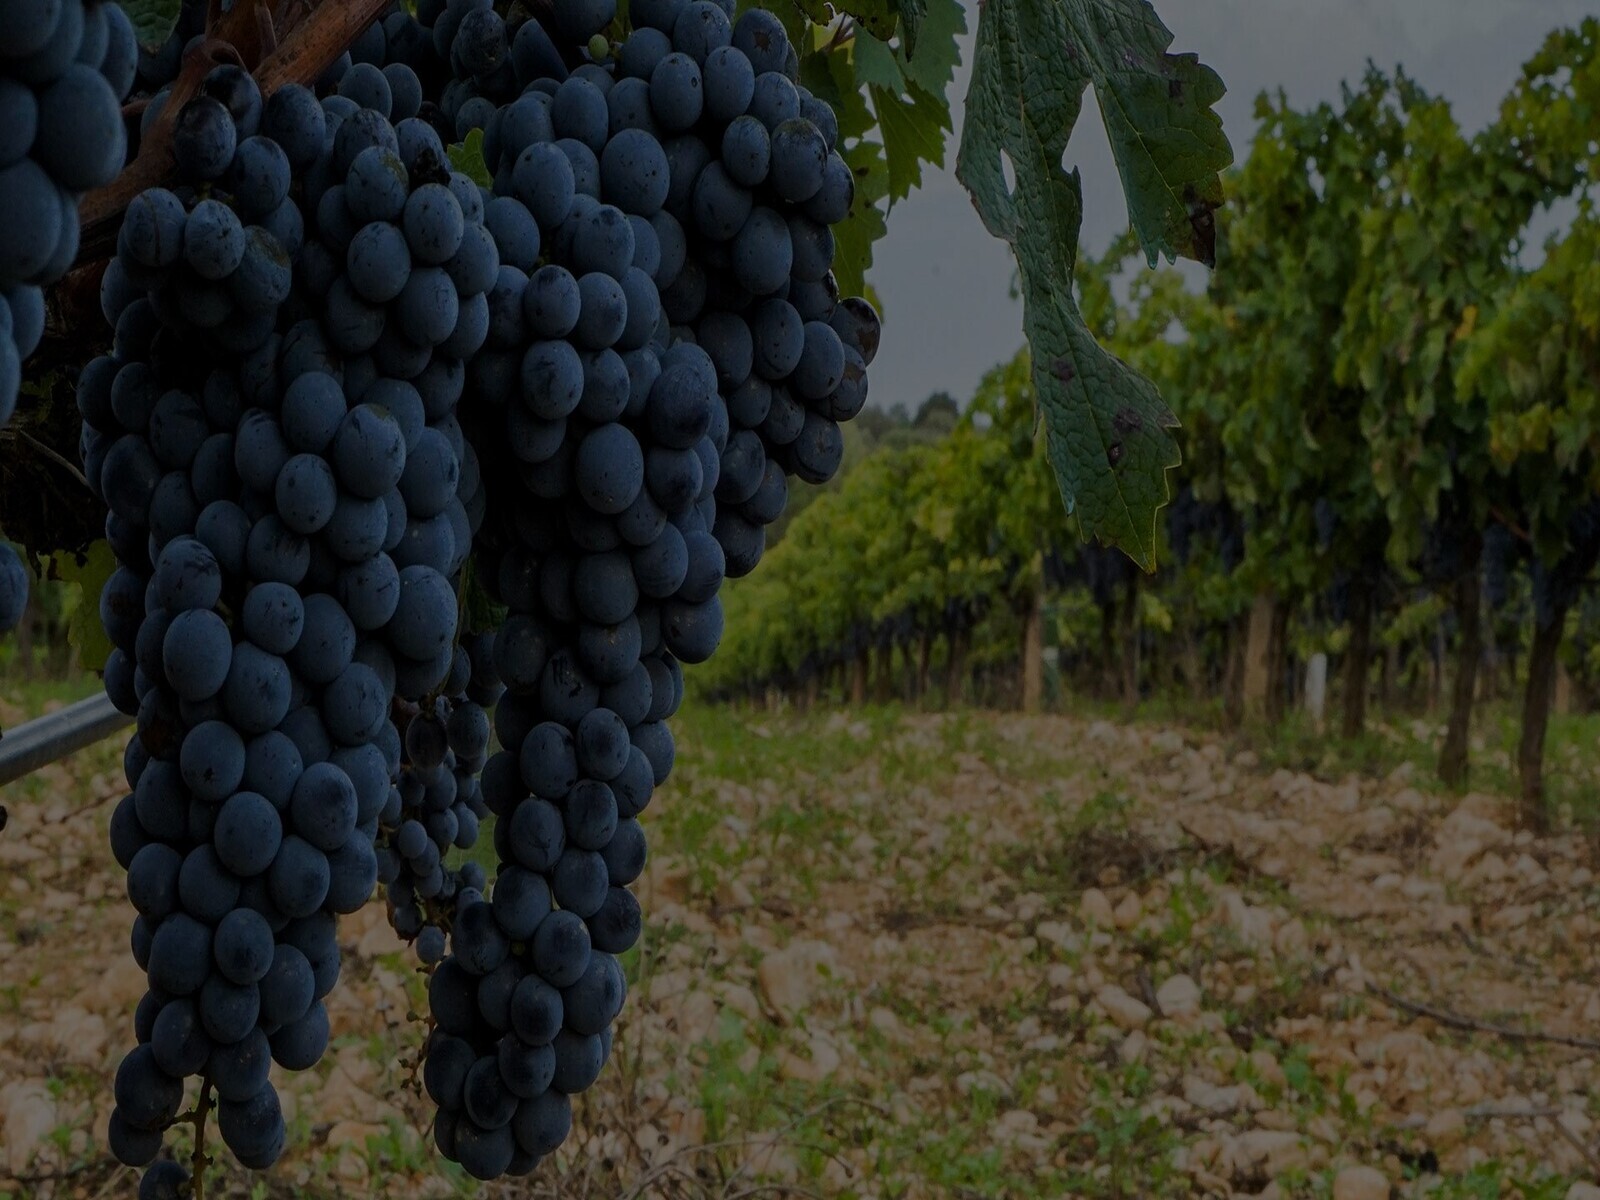 Biodiversitat i respecte per la naturalesaTornar a la viticultura i el treball en vinya que s'havia practicat des de fa segles, basant-nos en el profund coneixement de la naturalesa i en la passió per la fruita